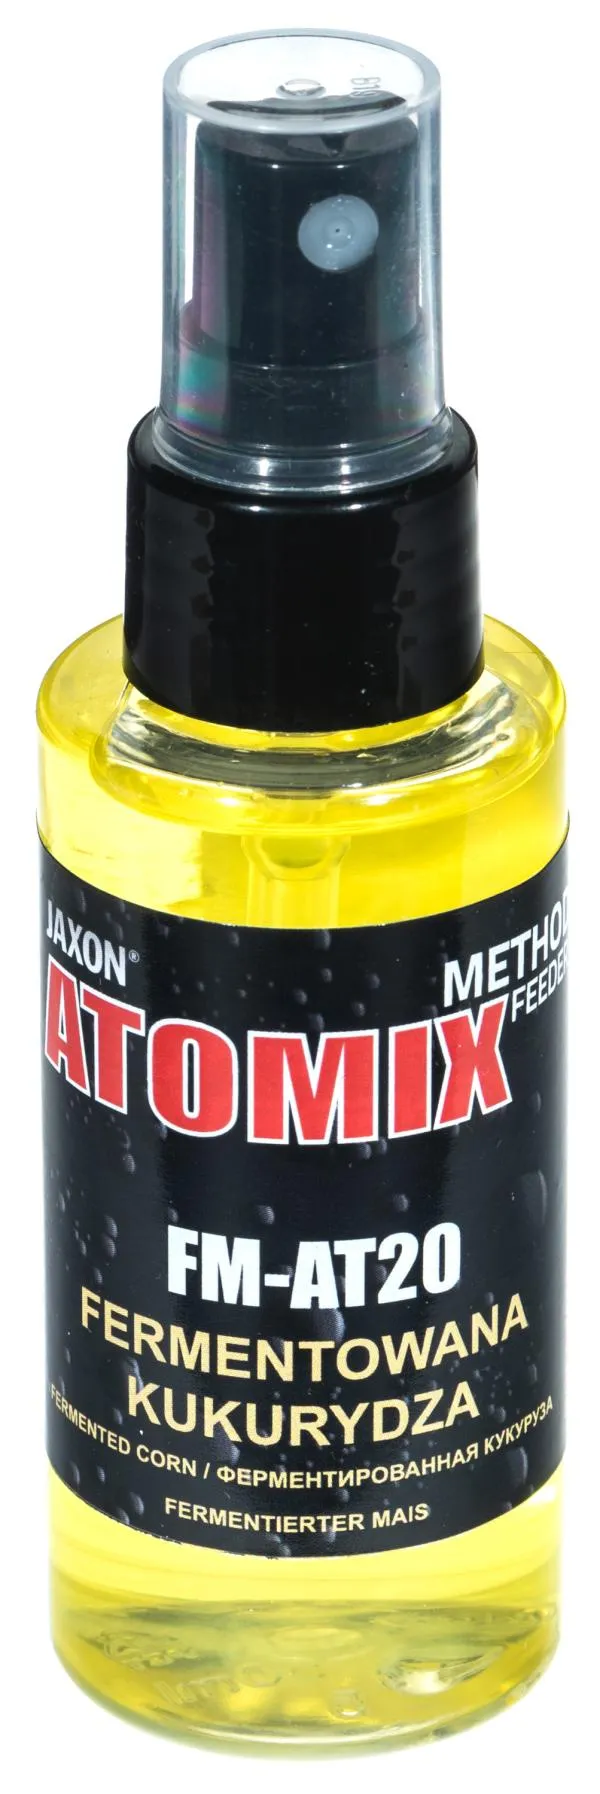 NextFish - Horgász webshop és horgászbolt - JAXON ATOMIX - FERMENTED CORN 50g aroma